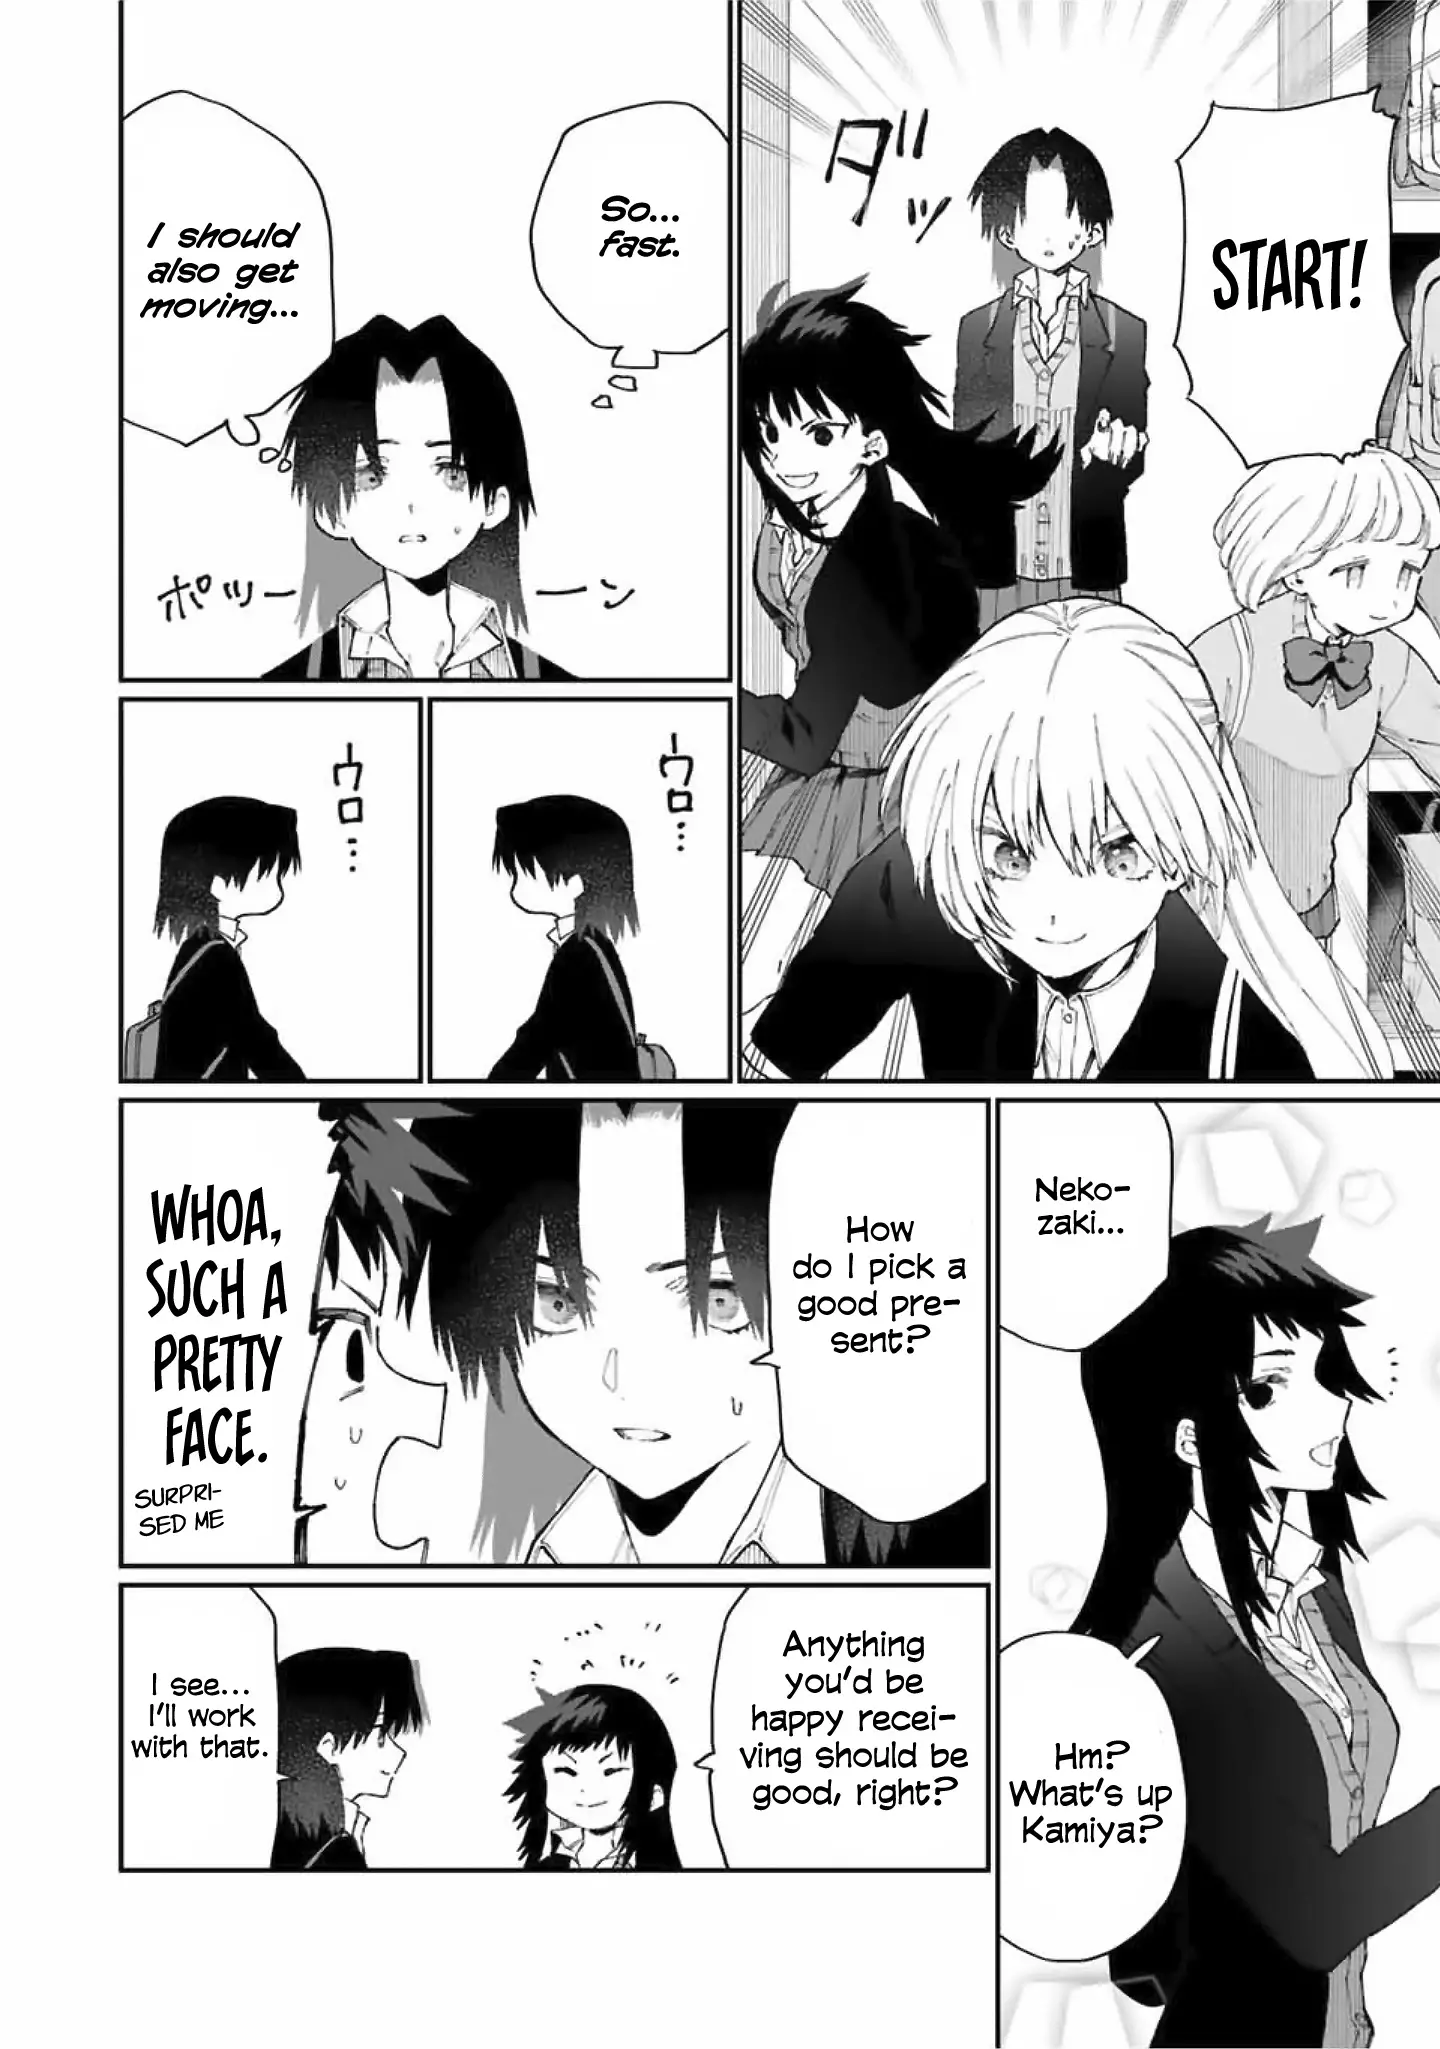 Shikimori's Not Just A Cutie - 72 page 7